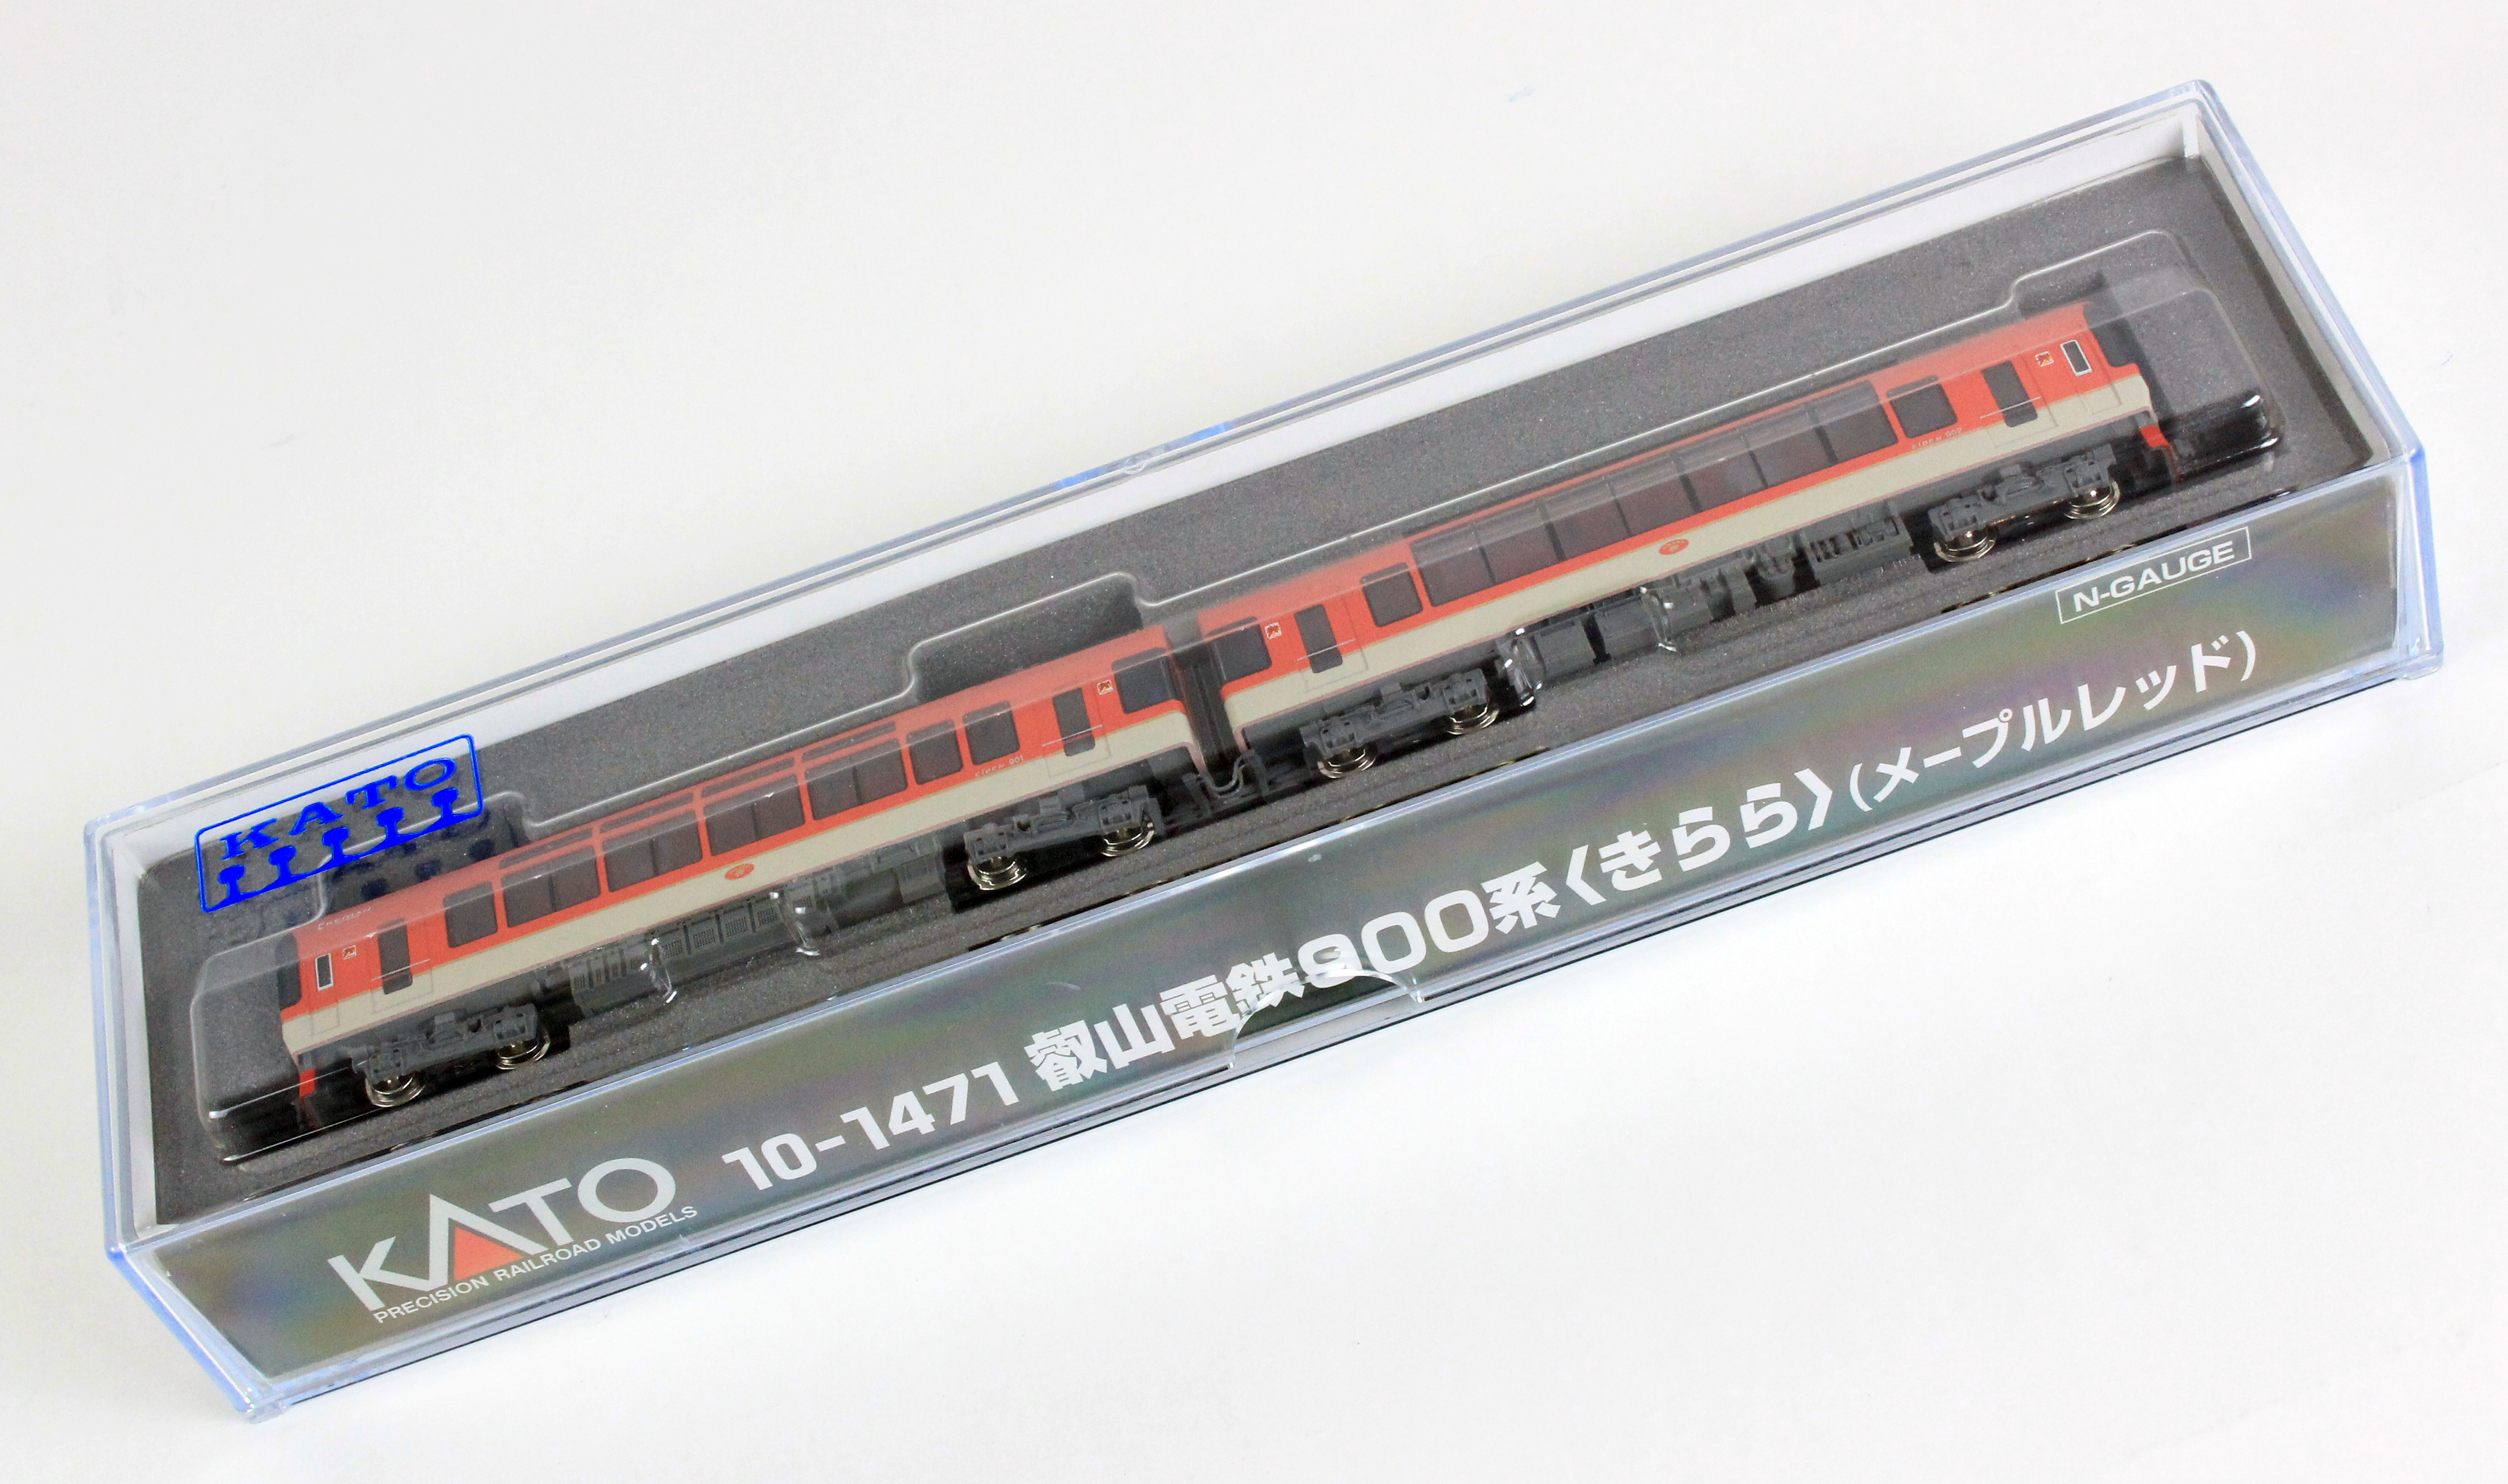 超お徳用 KATO Nゲージ 叡山電鉄900系 きらら レッド 10-1471 鉄道模型 電車 鉄道模型 ENTEIDRICOCAMPANO